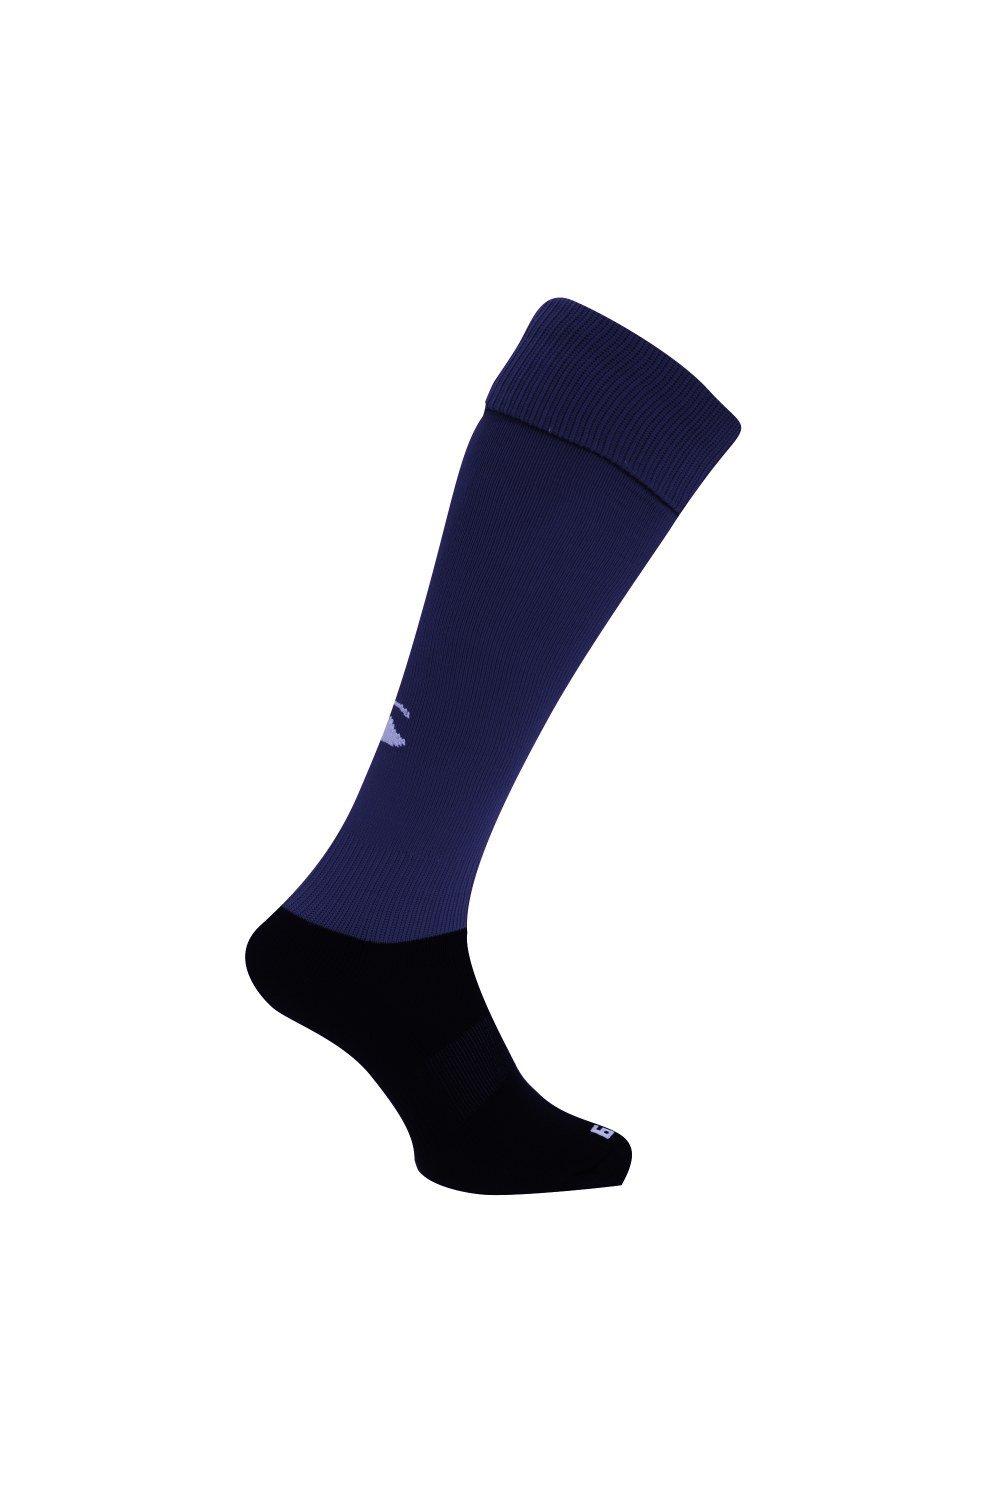 Спортивные носки для игры в регби Canterbury, темно-синий